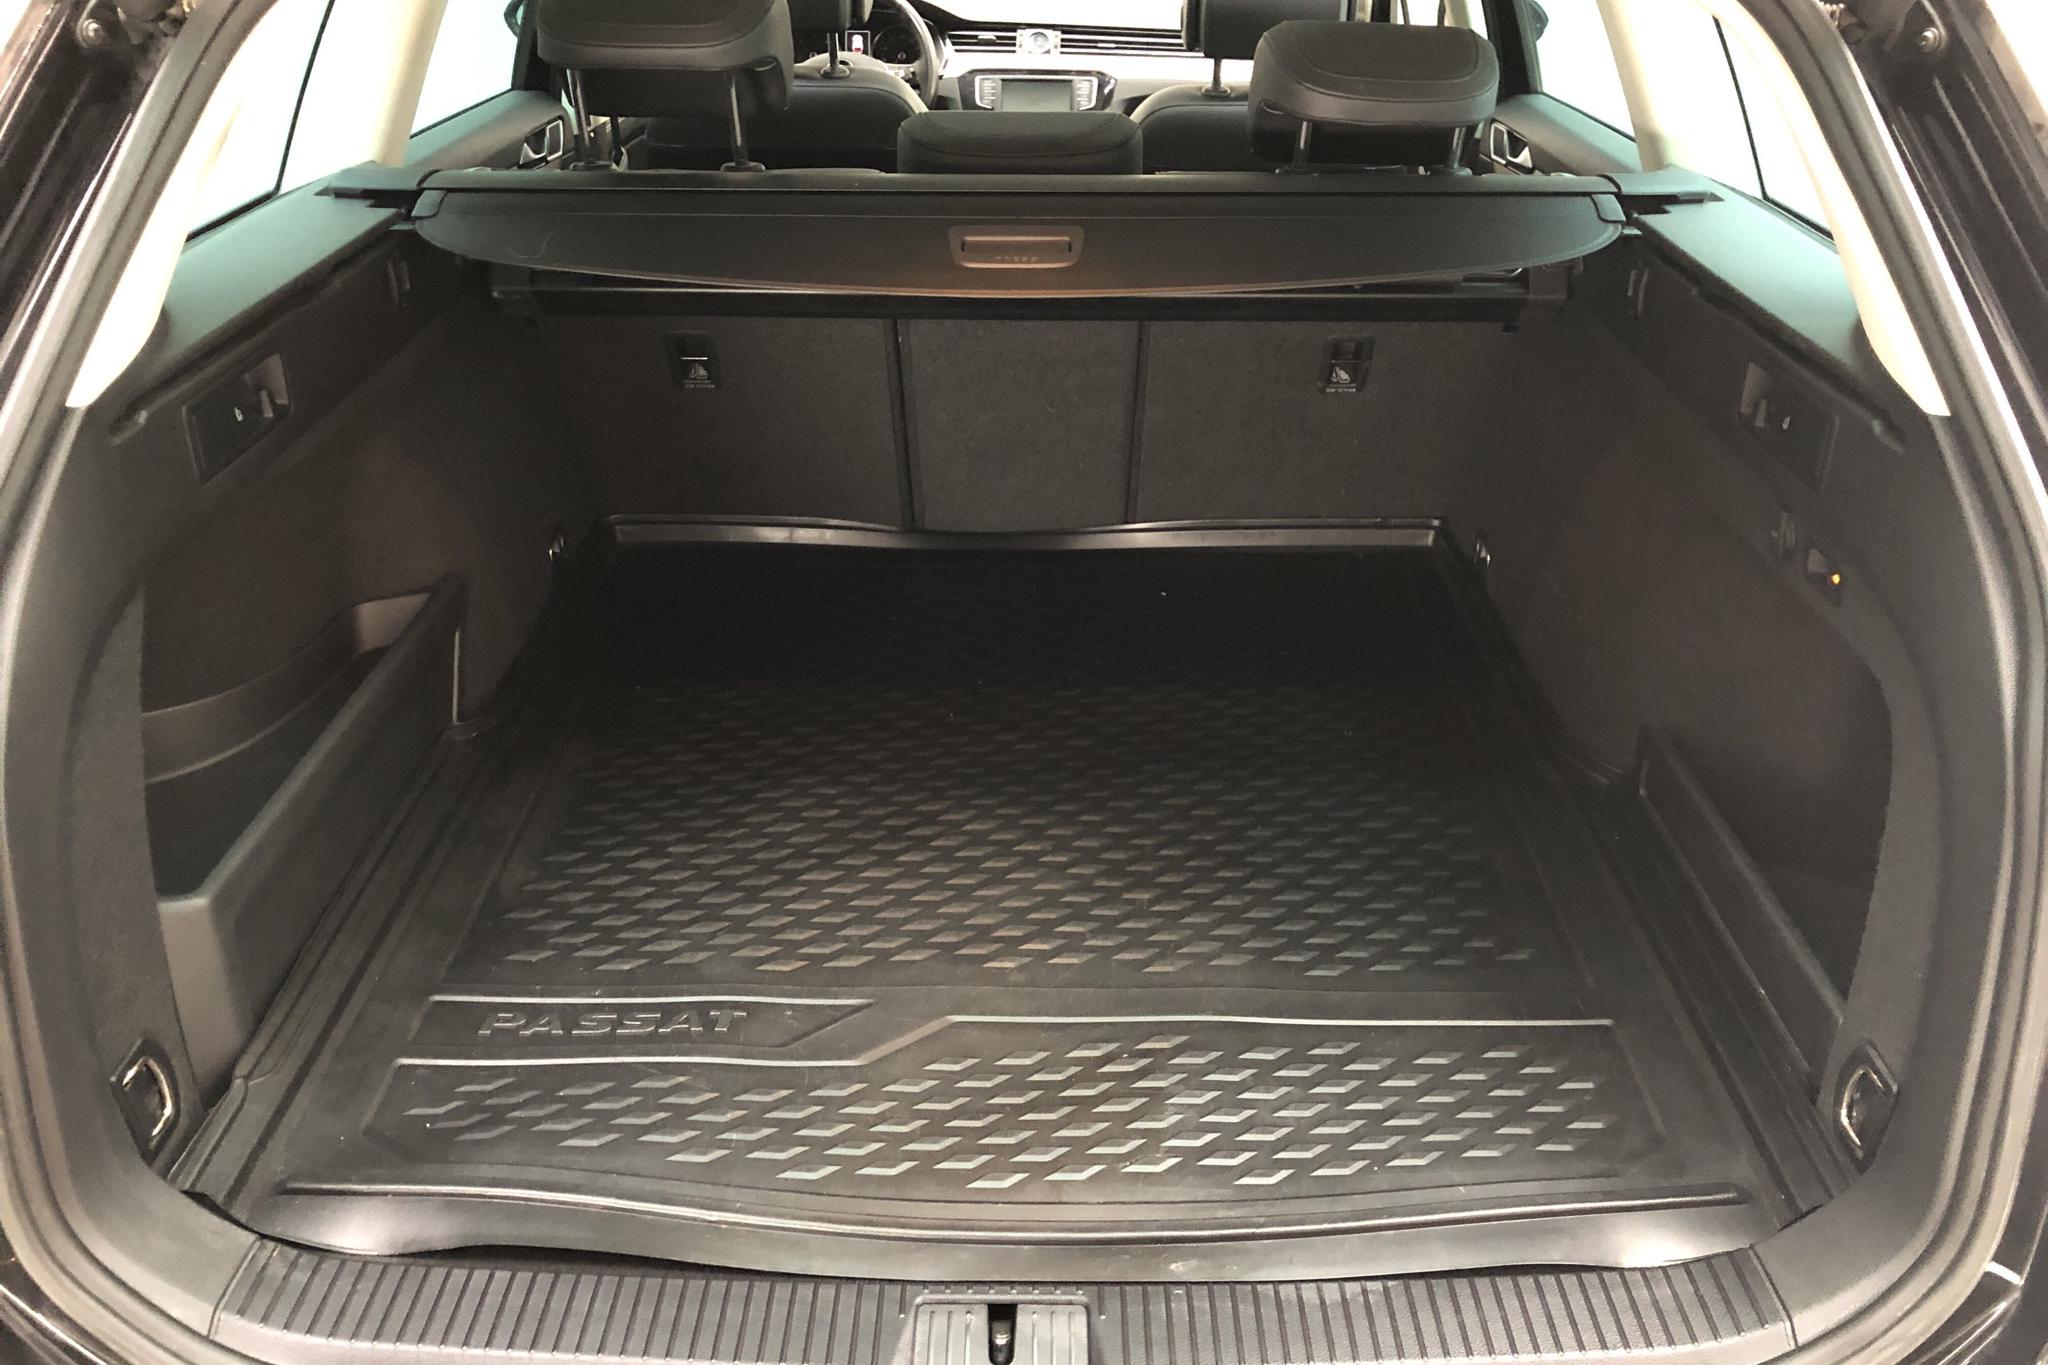 VW Passat 2.0 TDI Sportscombi (190hk) - 115 560 km - Manual - black - 2017